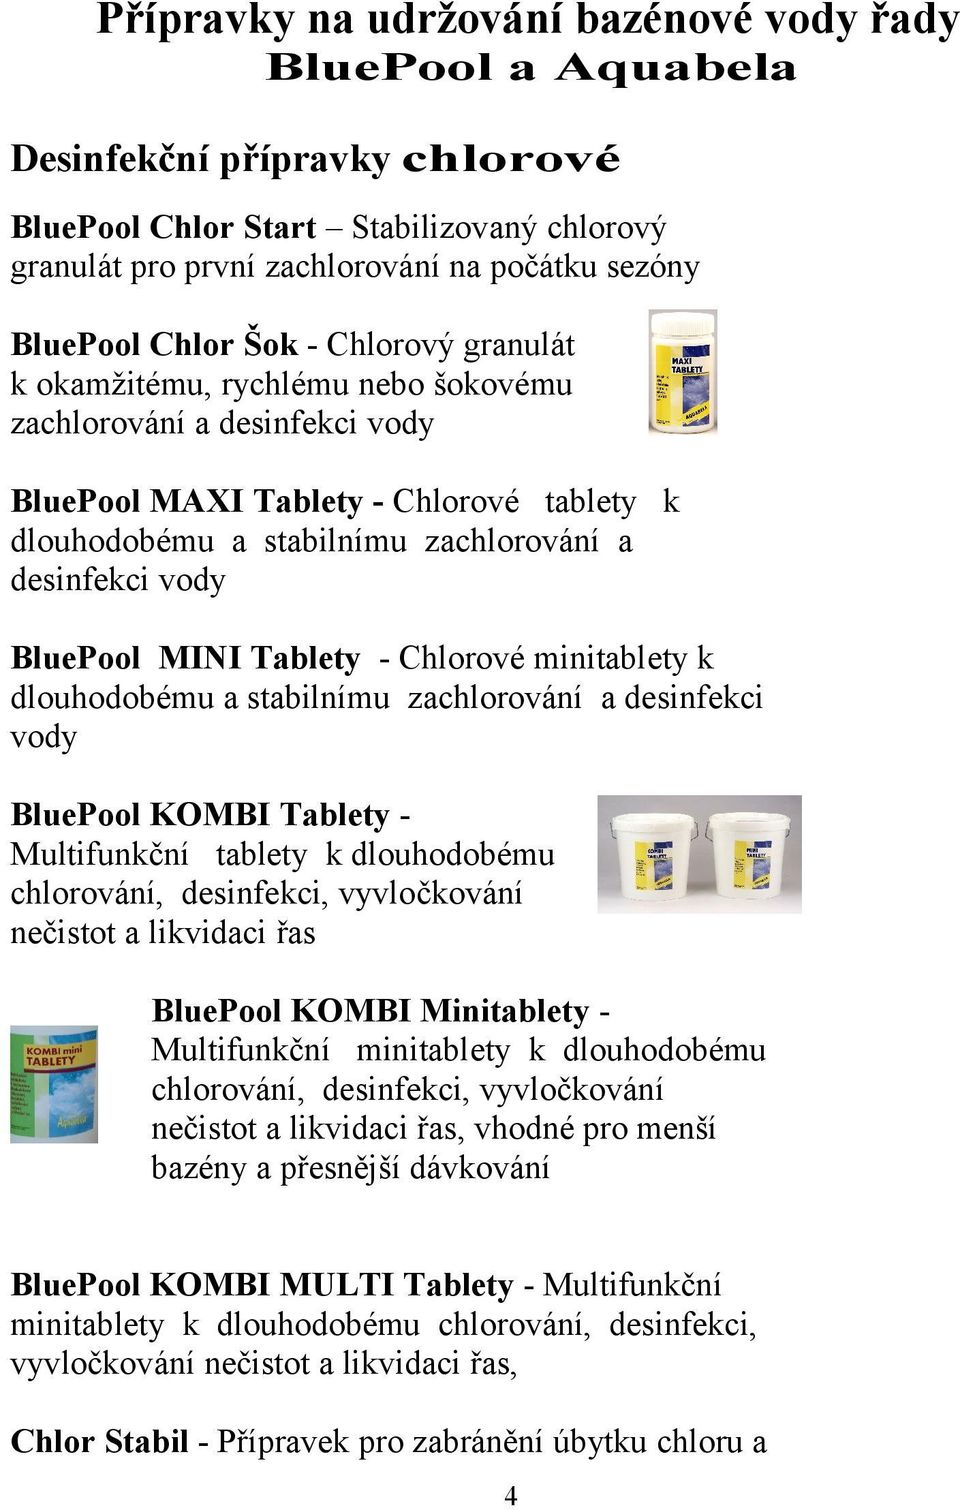 BluePool MINI Tablety - Chlorové minitablety k dlouhodobému a stabilnímu zachlorování a desinfekci vody BluePool KOMBI Tablety Multifunkční tablety k dlouhodobému chlorování, desinfekci, vyvločkování